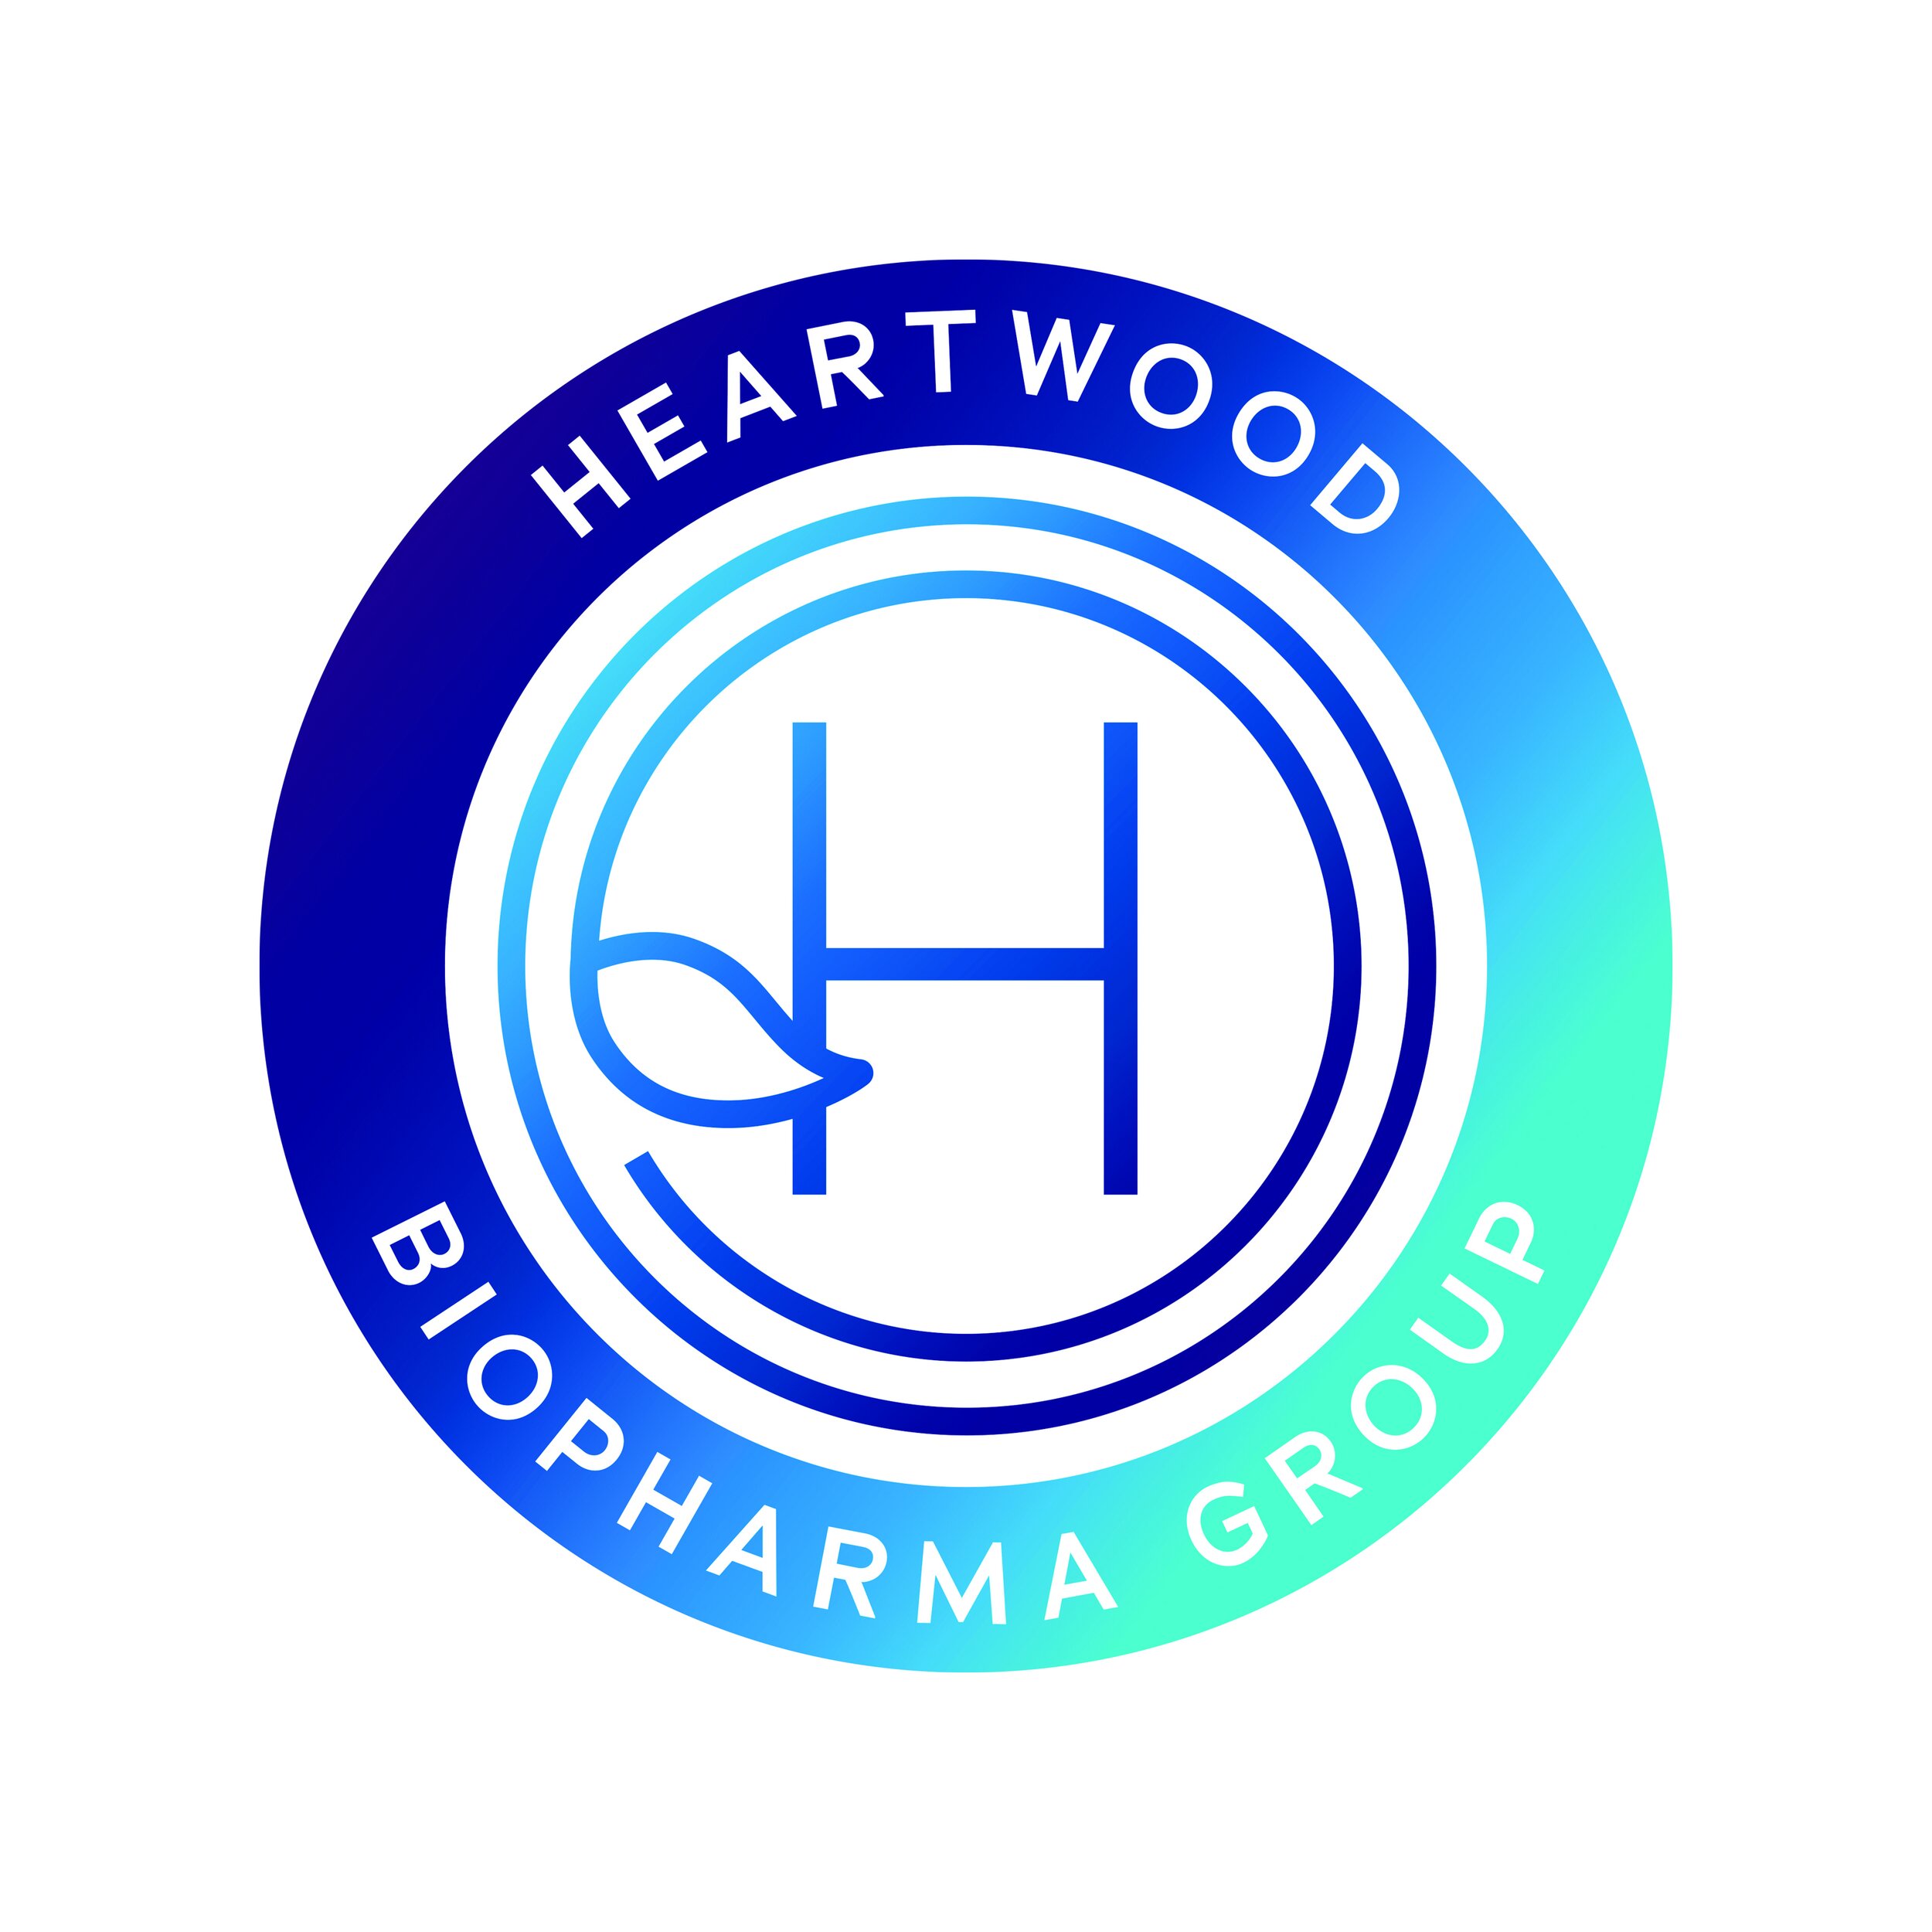 Heartwood_Biopharma_Badge.jpg